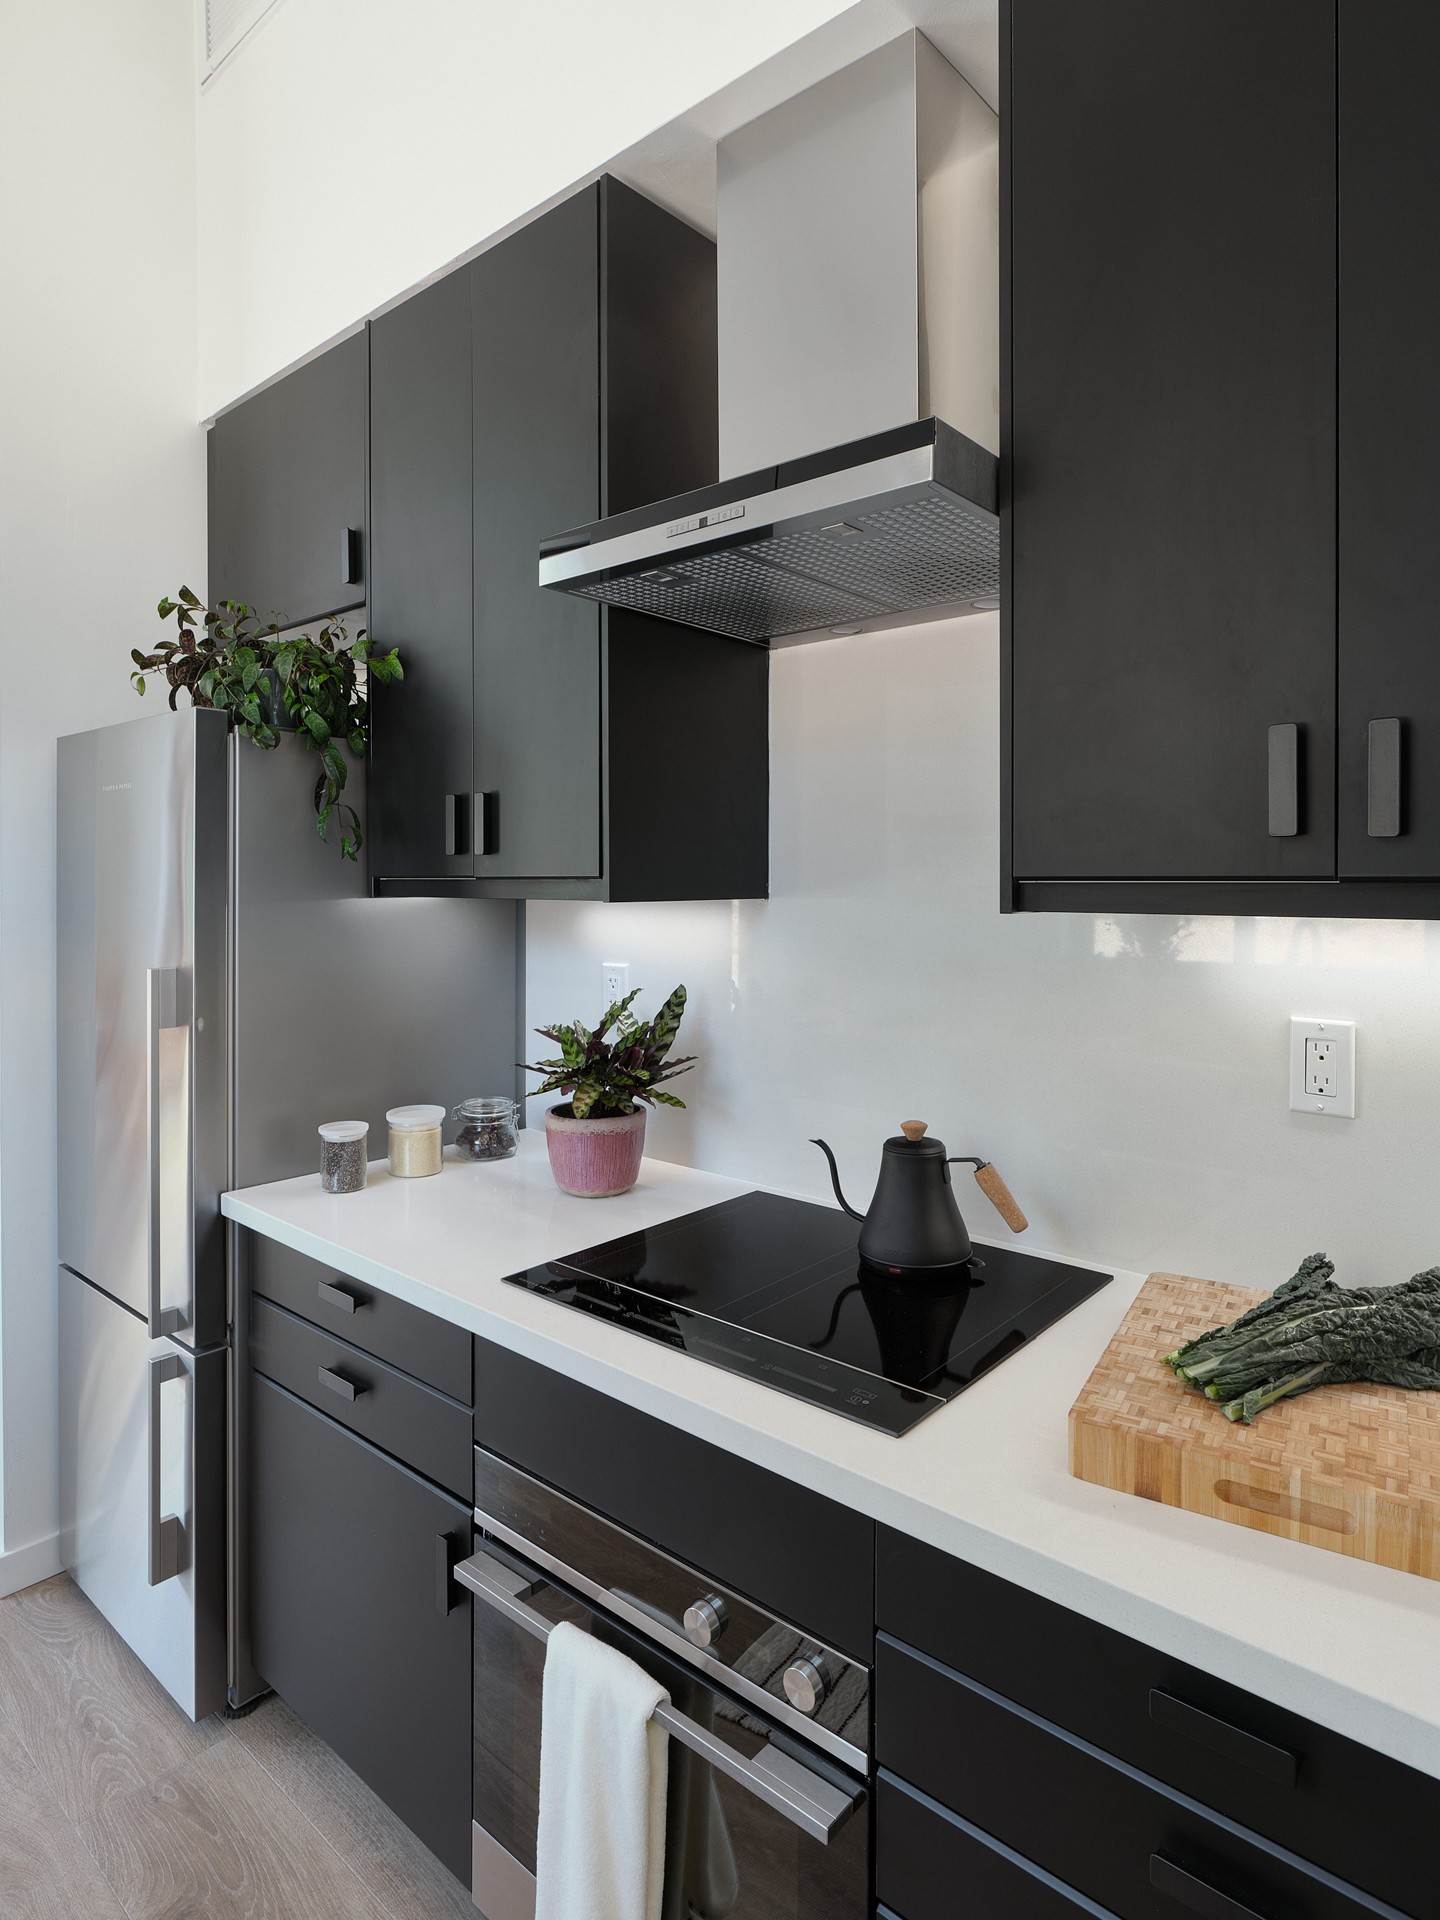 Cozinha com design preto minimalista e decoração em madeira